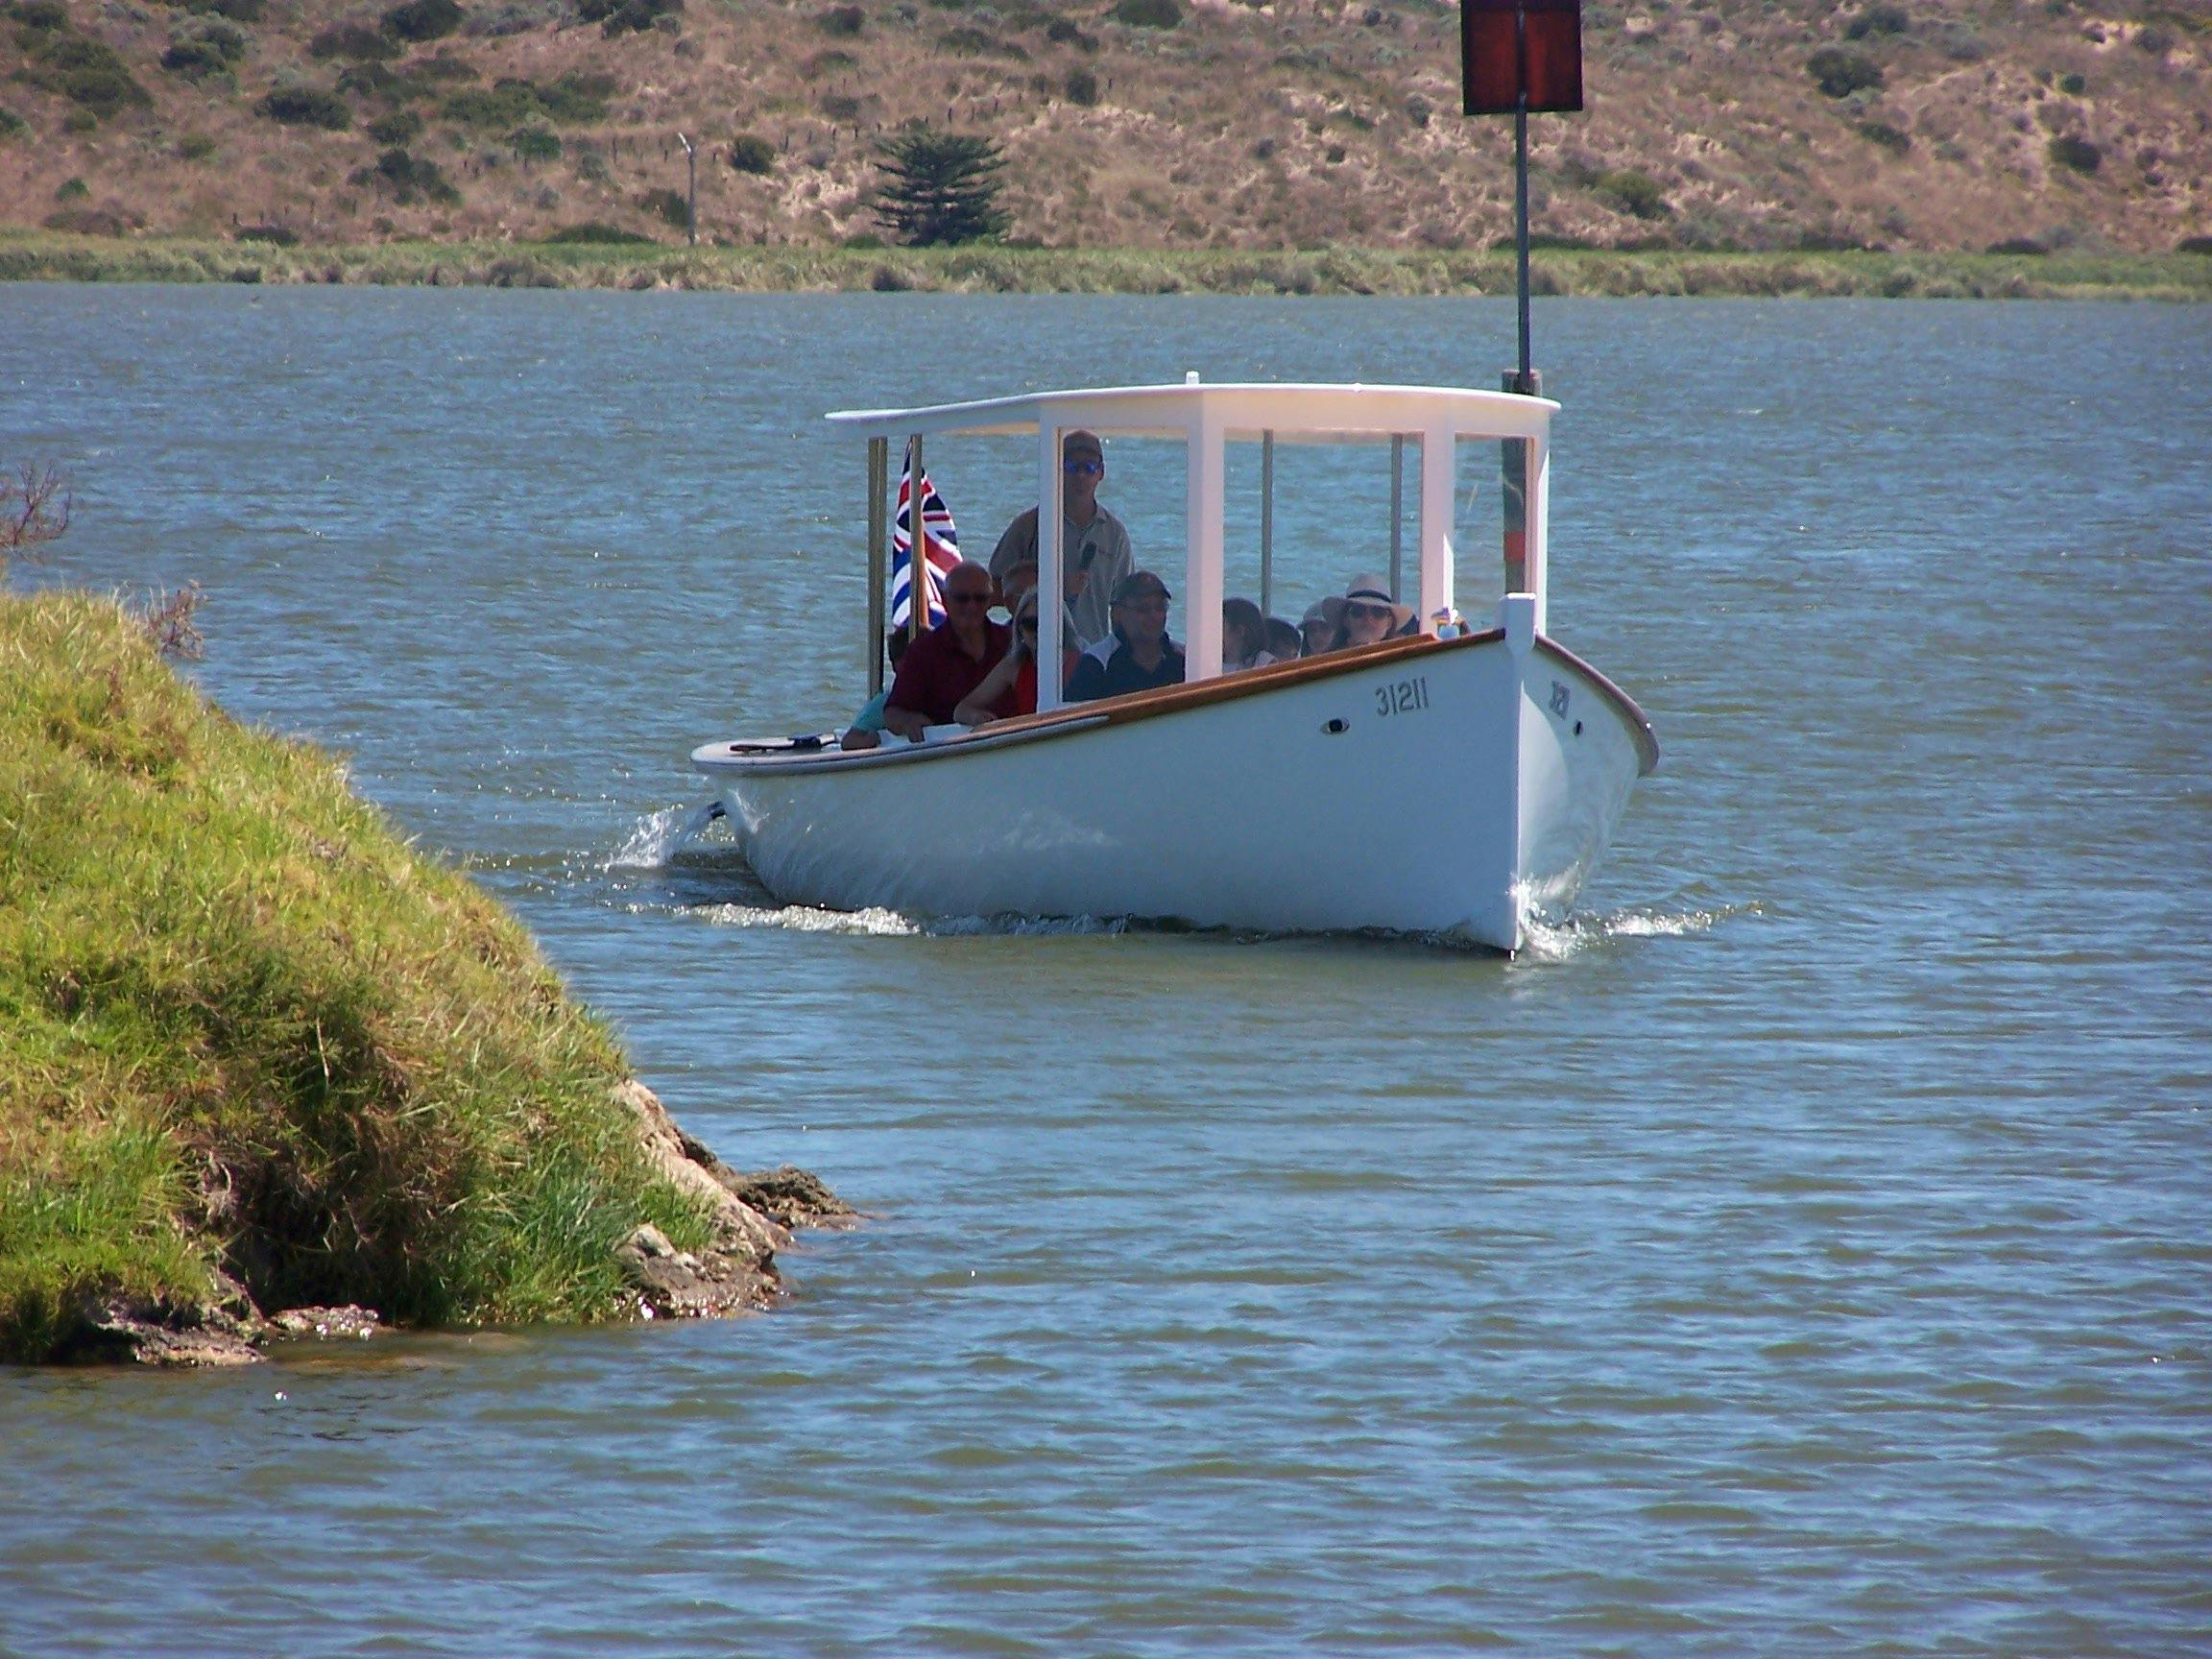 Maranui Boat Tours - Goolwa